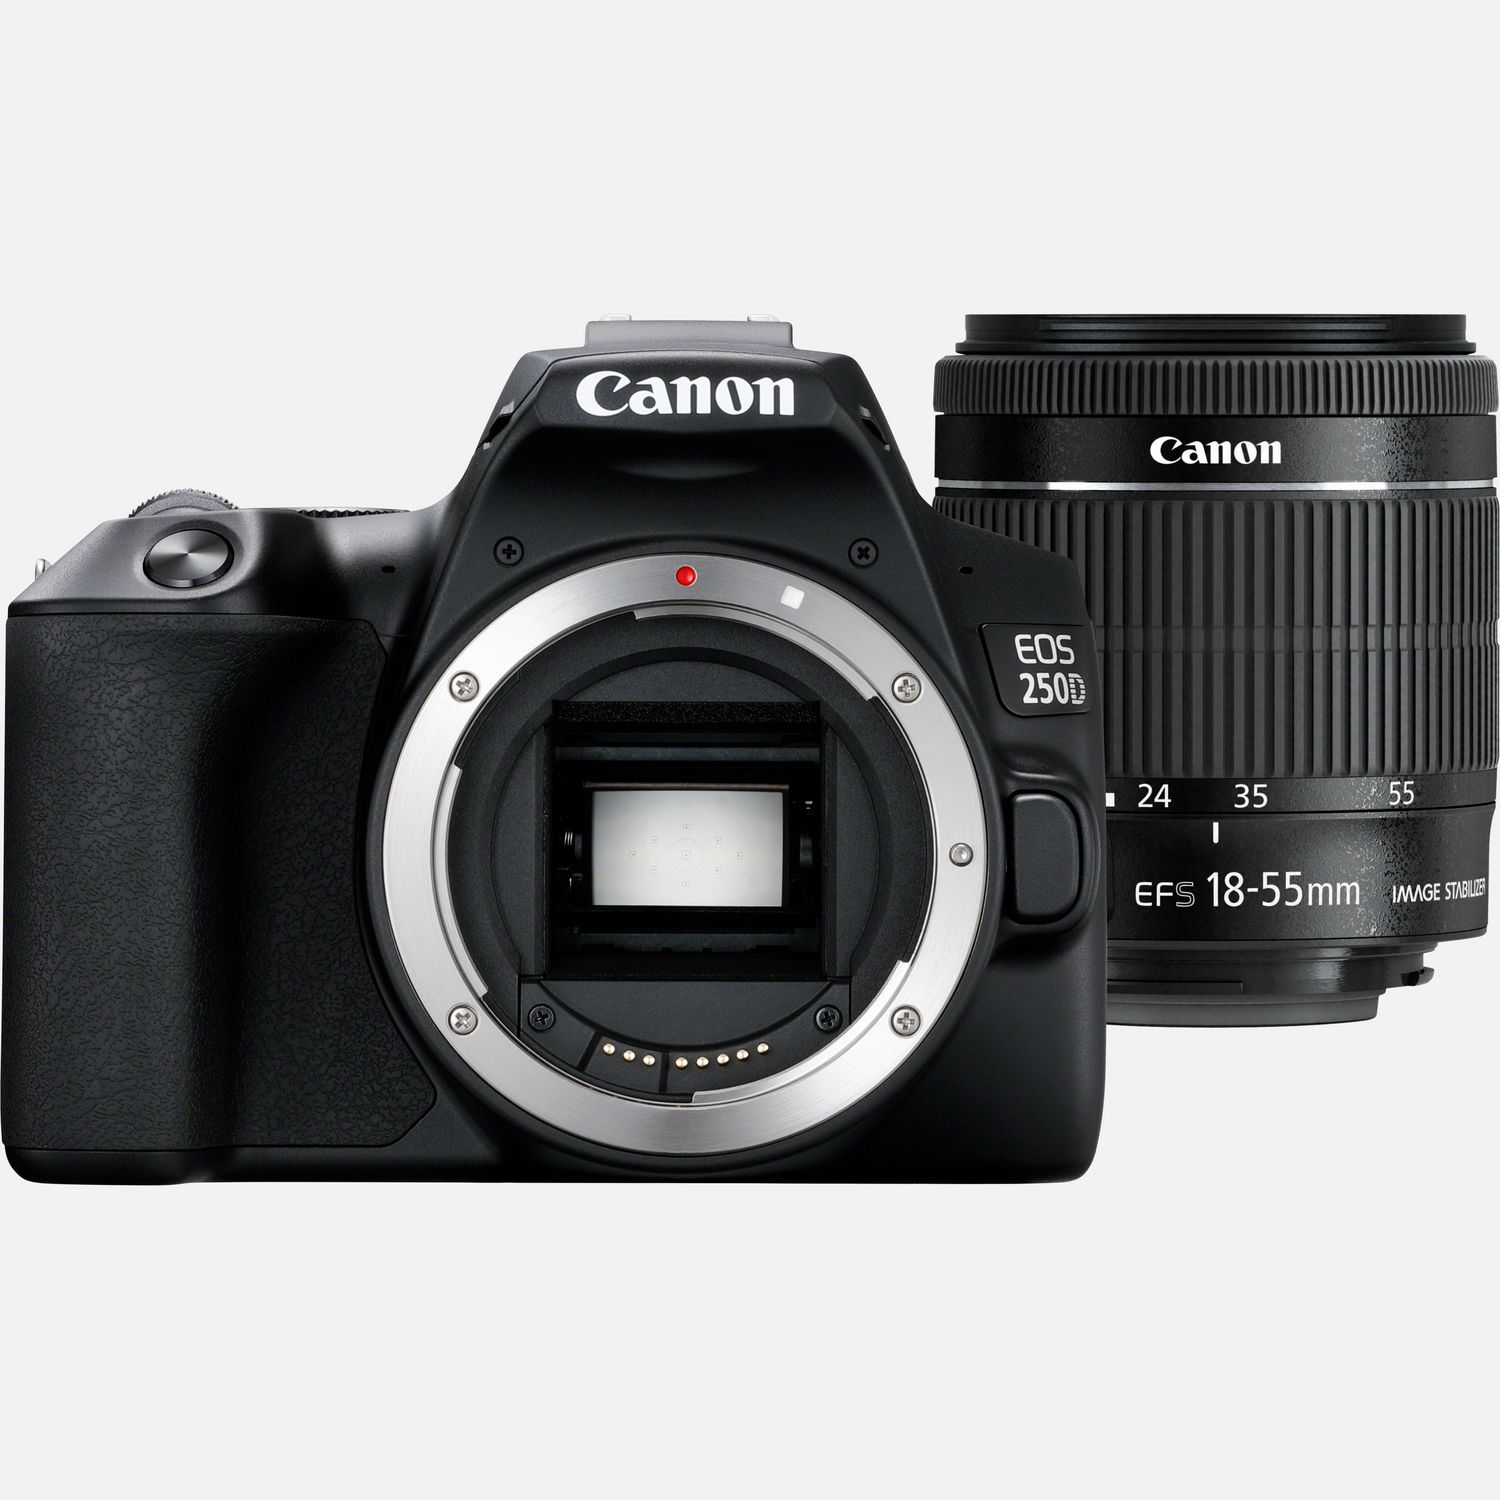 Comprar Canon EOS 250D negra + objetivo EF-S f/4-5.6 IS STM en Cámaras con Wi-Fi — Canon Espana